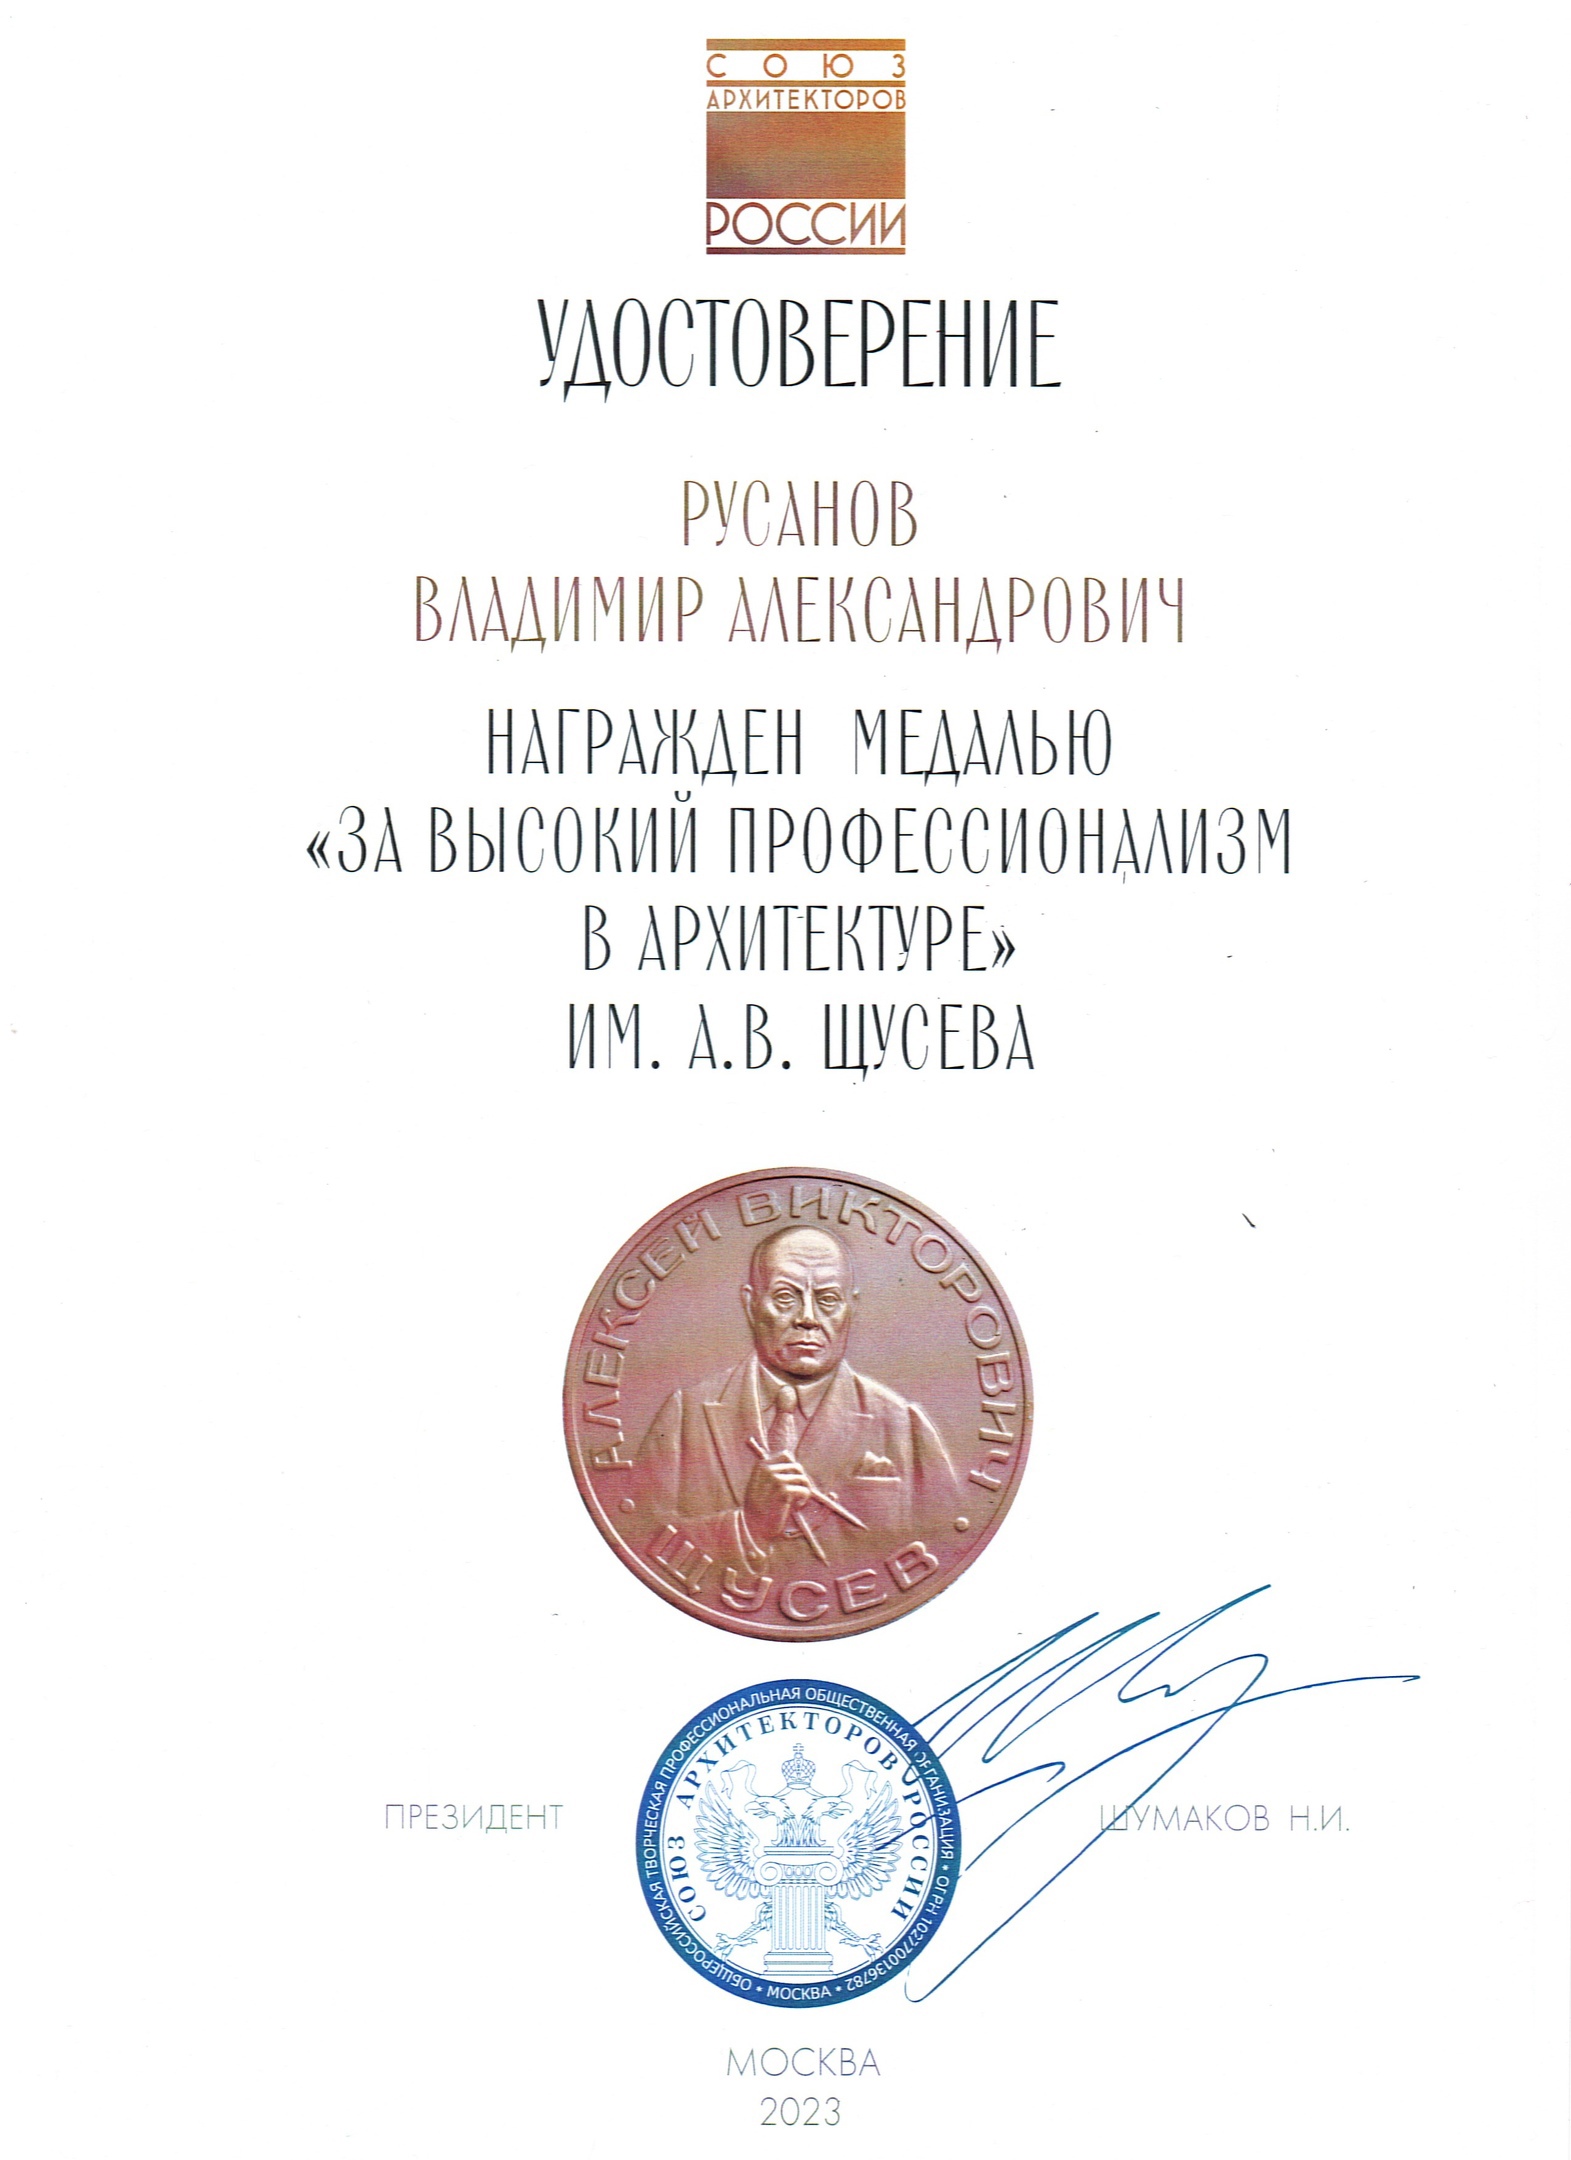 Архитектор Владимир Русанов награжден медалью им. А.В. Щусева